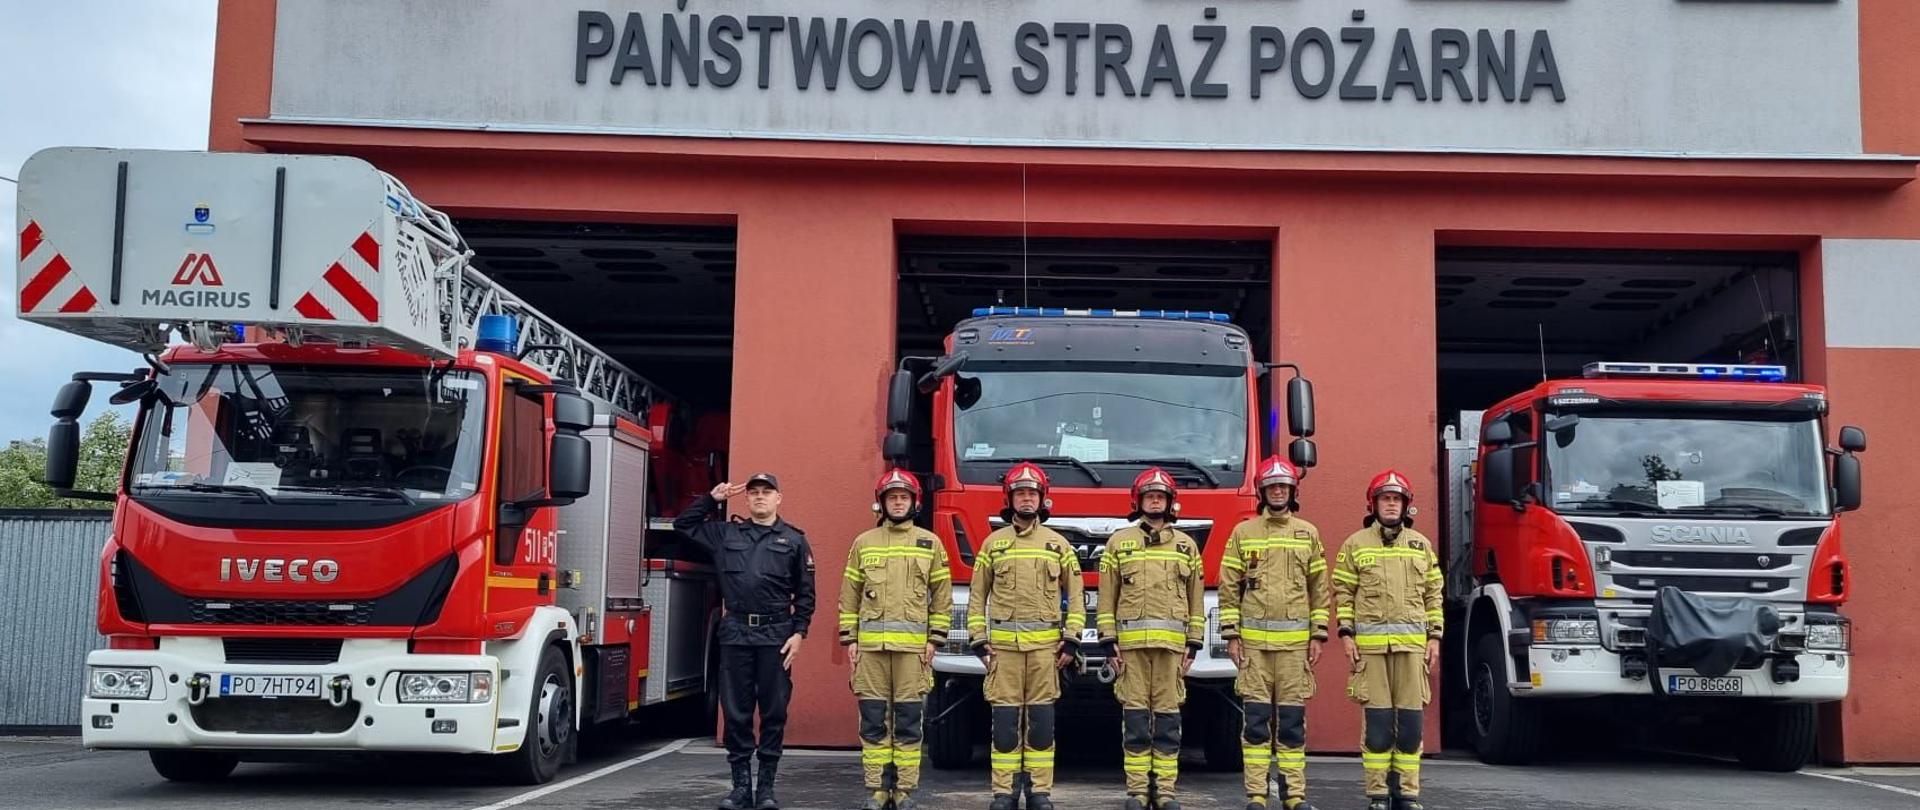 6 strażaków stojących na tle samochodów pożarniczych.